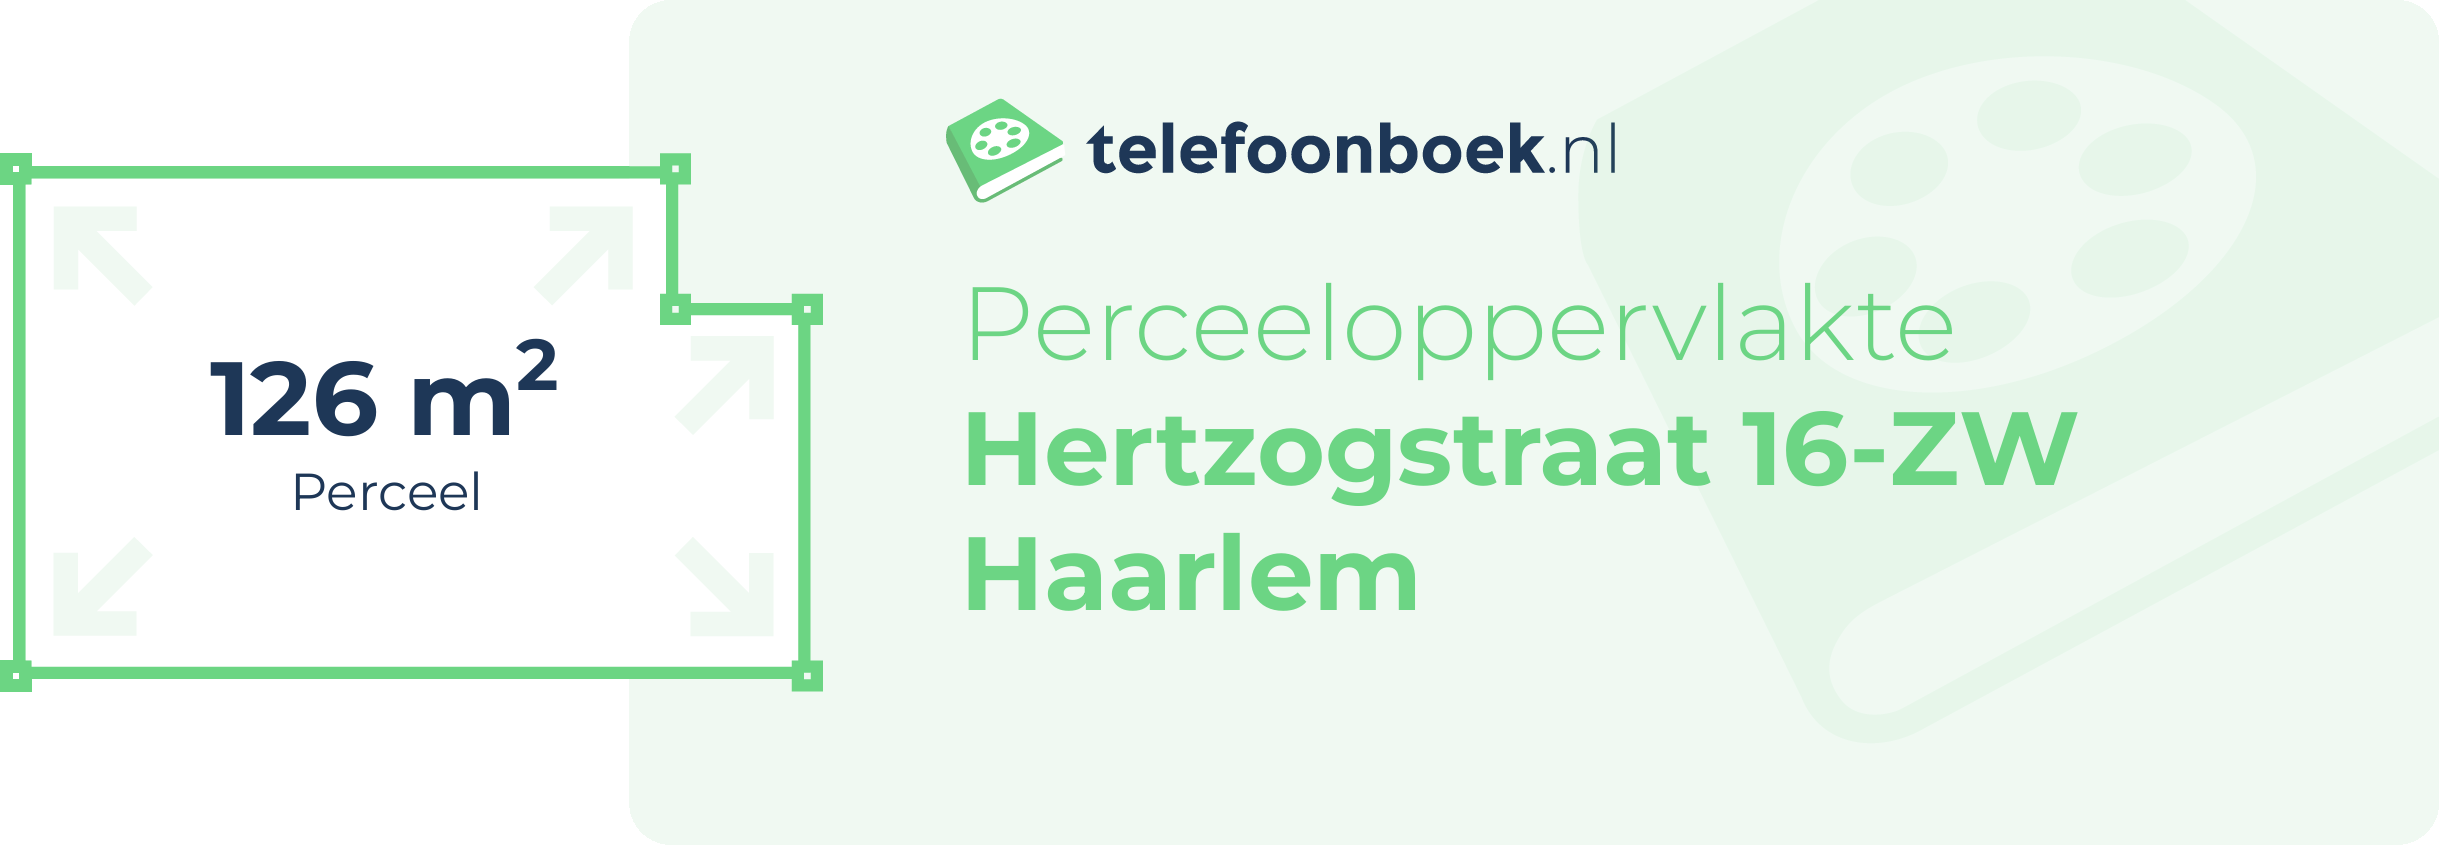 Perceeloppervlakte Hertzogstraat 16-ZW Haarlem